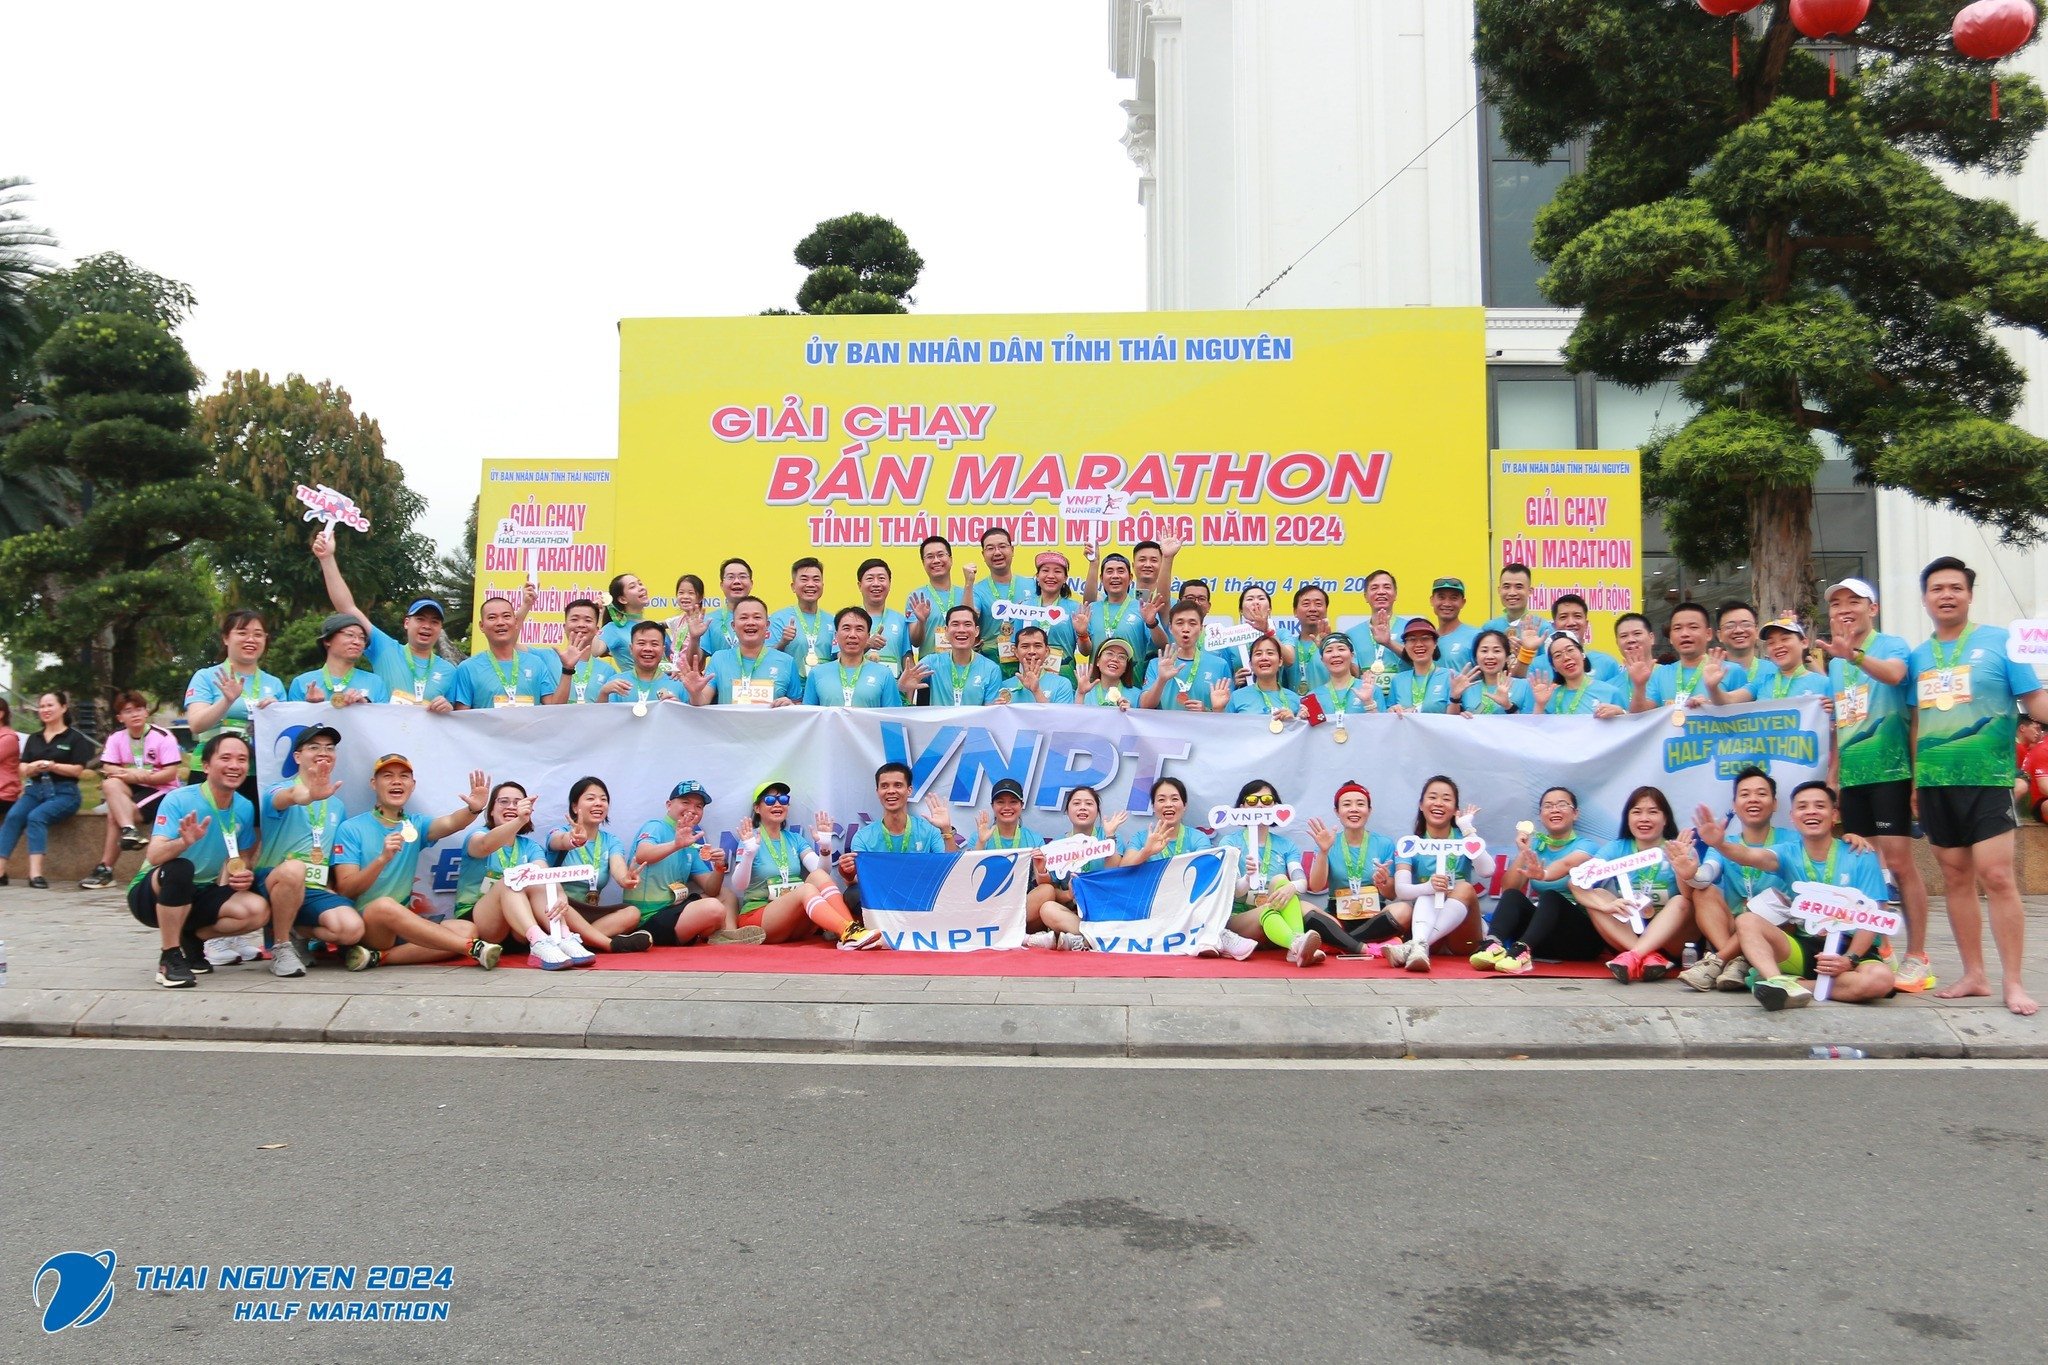 VNPT Runner phủ xanh giải chạy bán marathon tỉnh Thái Nguyên năm 2024